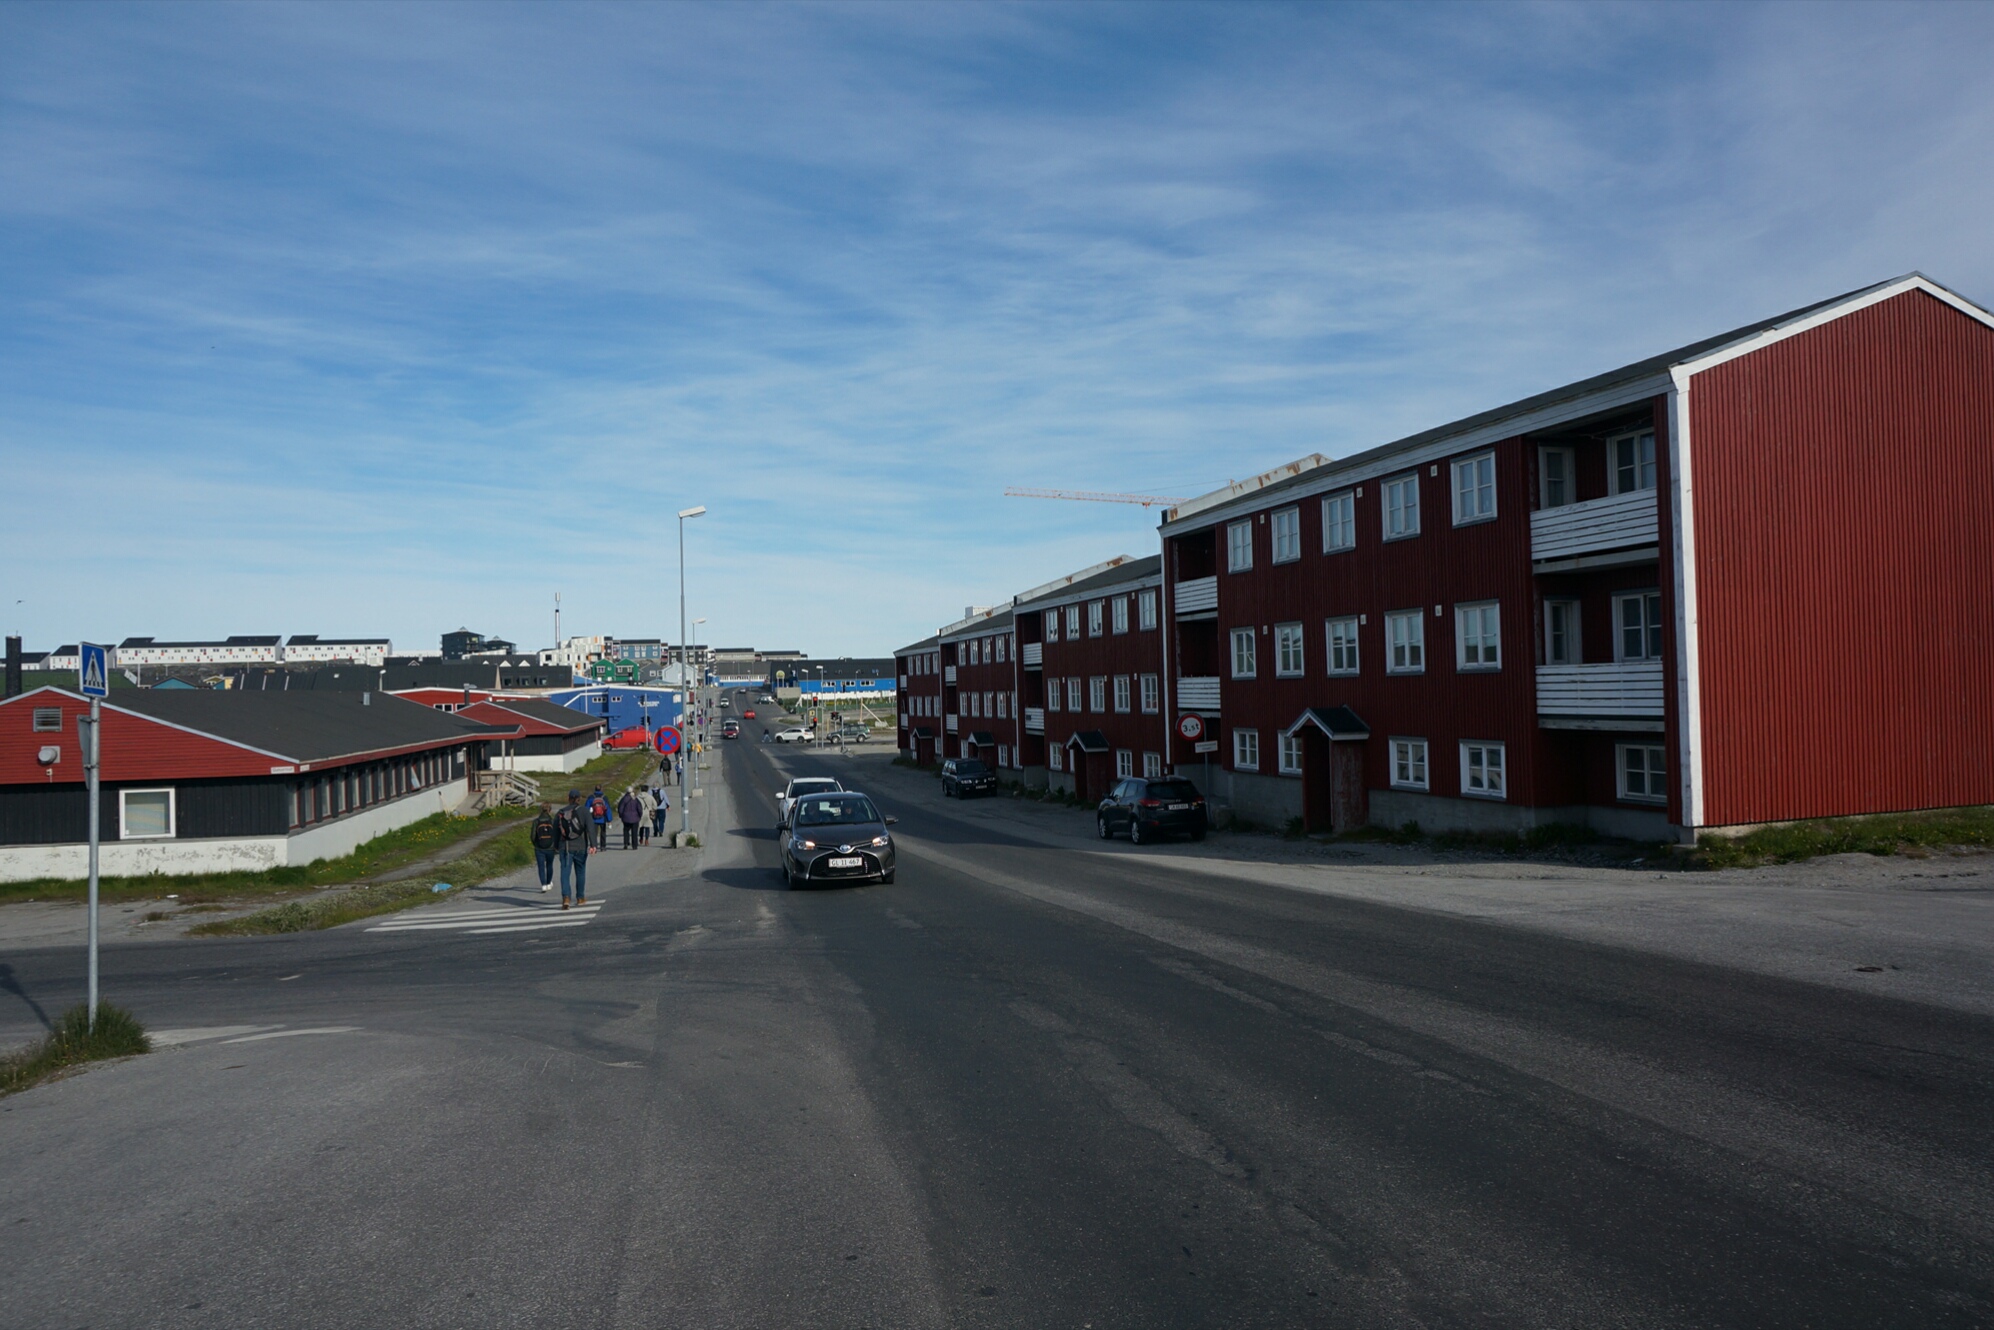 努克（Nuuk）是格陵兰的首都，聚居了全国四分之一的人口，是格陵兰的行政、文化和经济中心。努克属于北